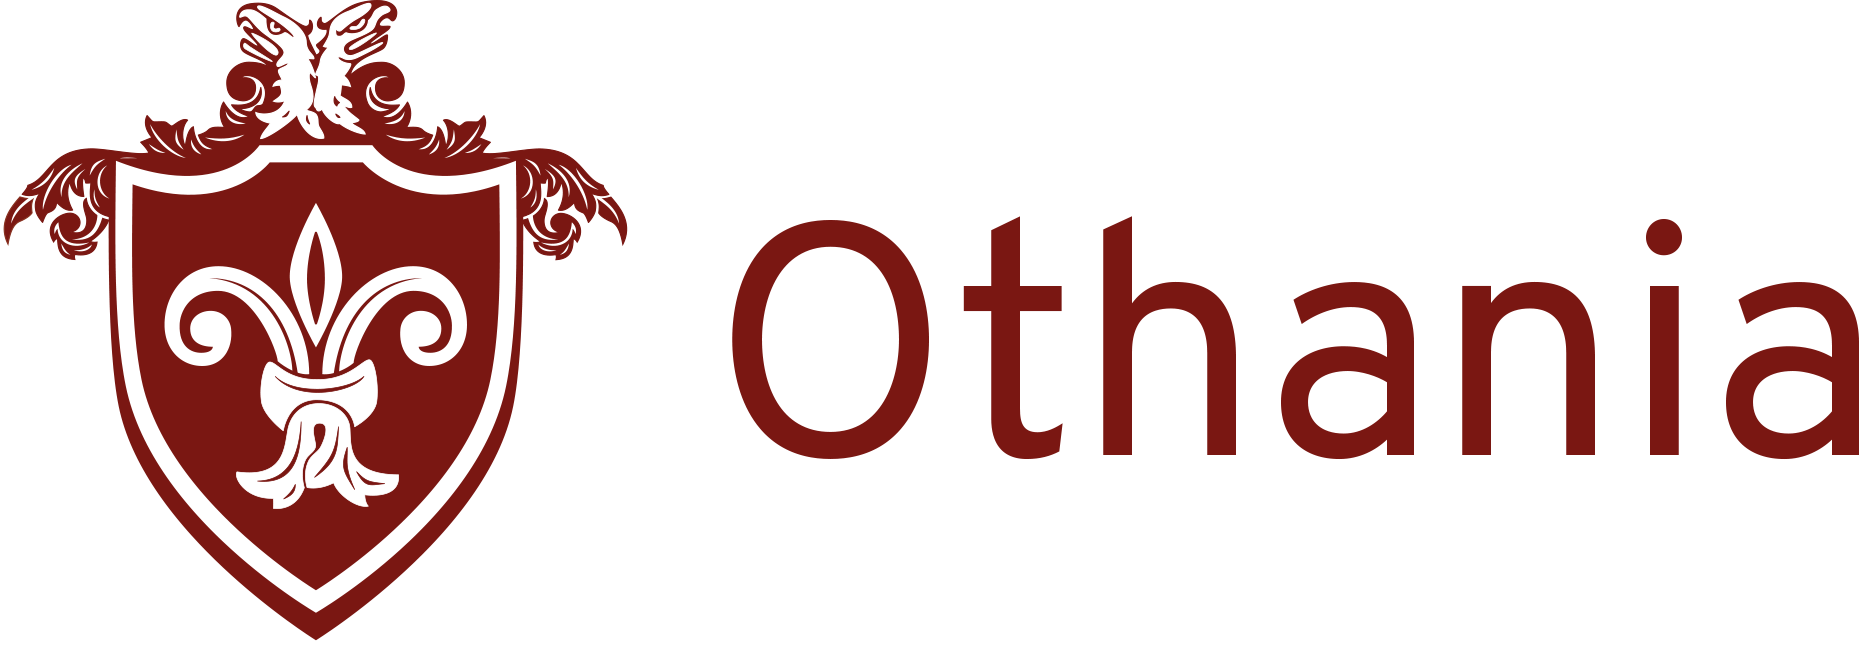 Othania